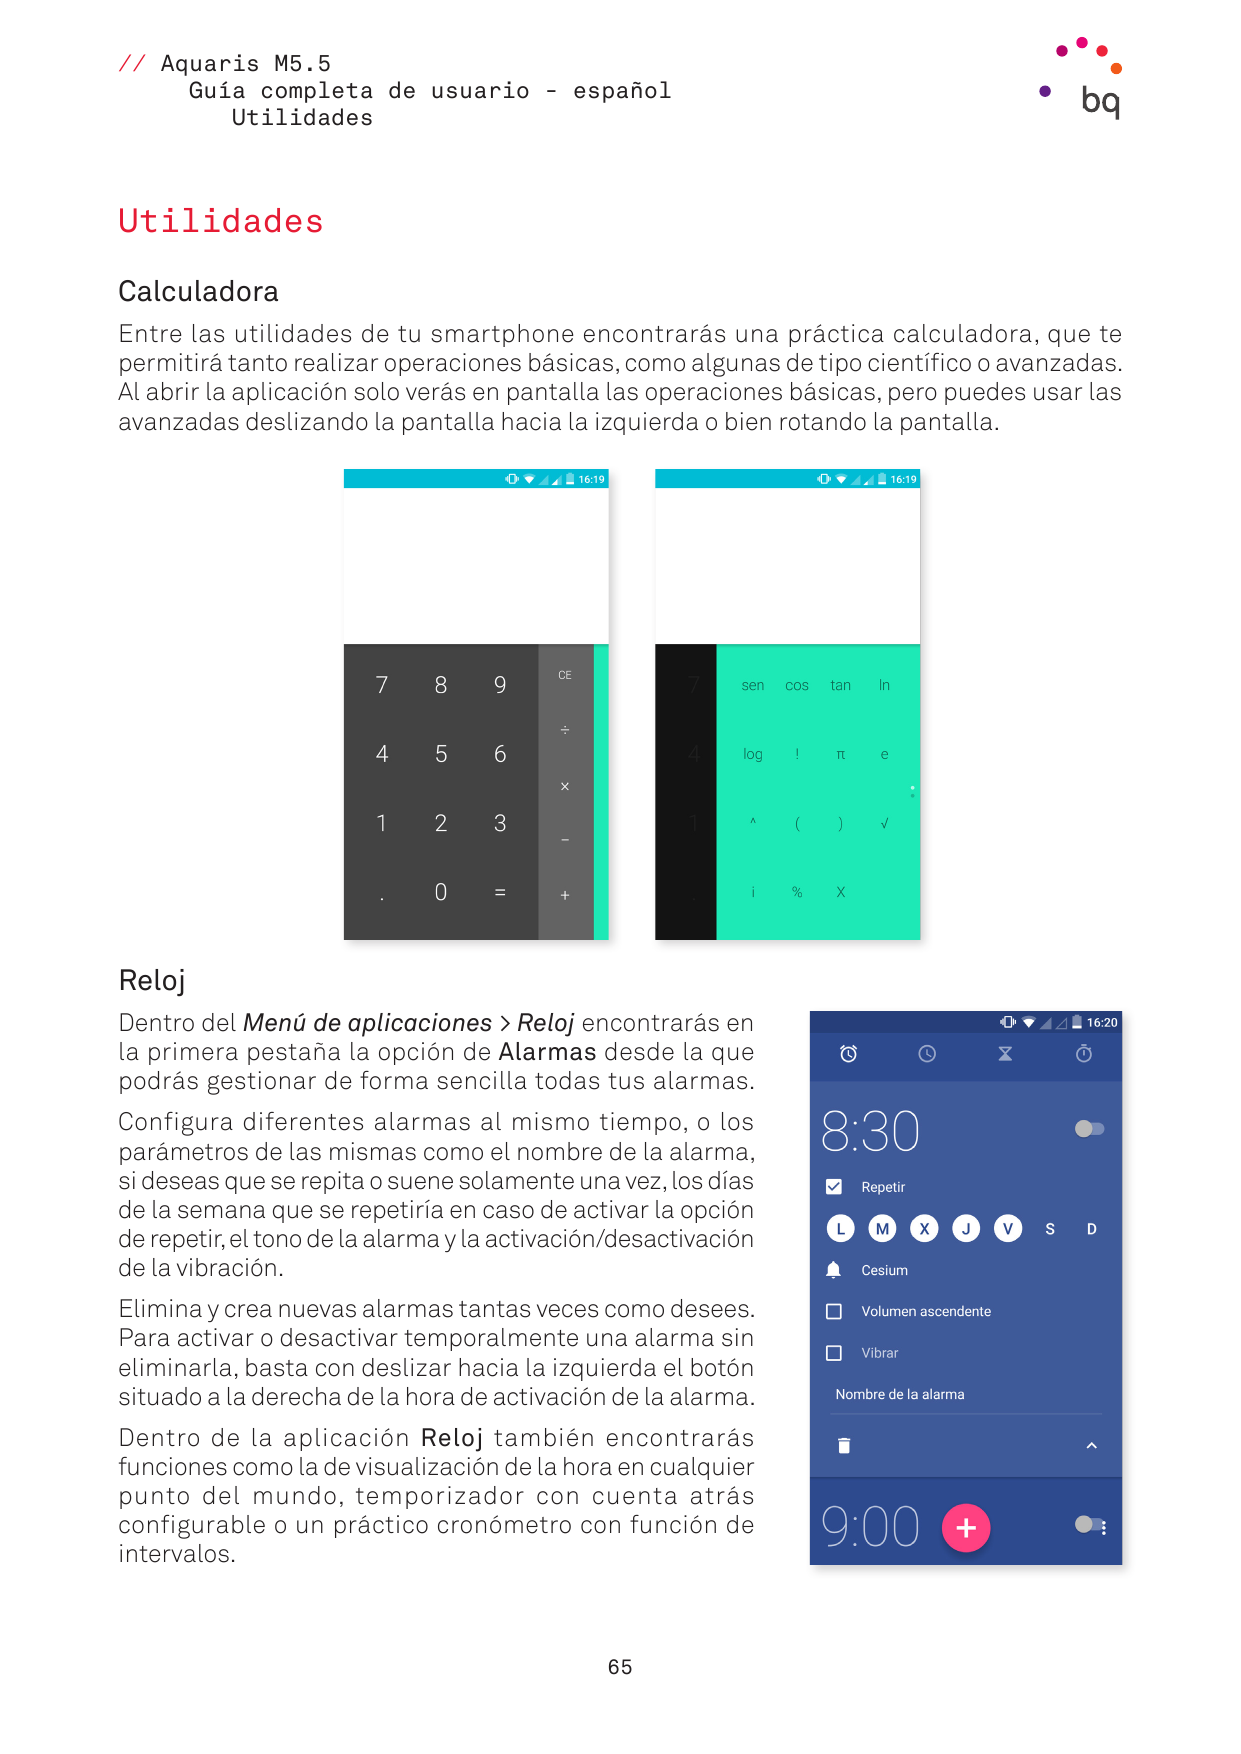 // Aquaris M5.5Guía completa de usuario - españolUtilidadesUtilidadesCalculadoraEntre las utilidades de tu smartphone encontrará